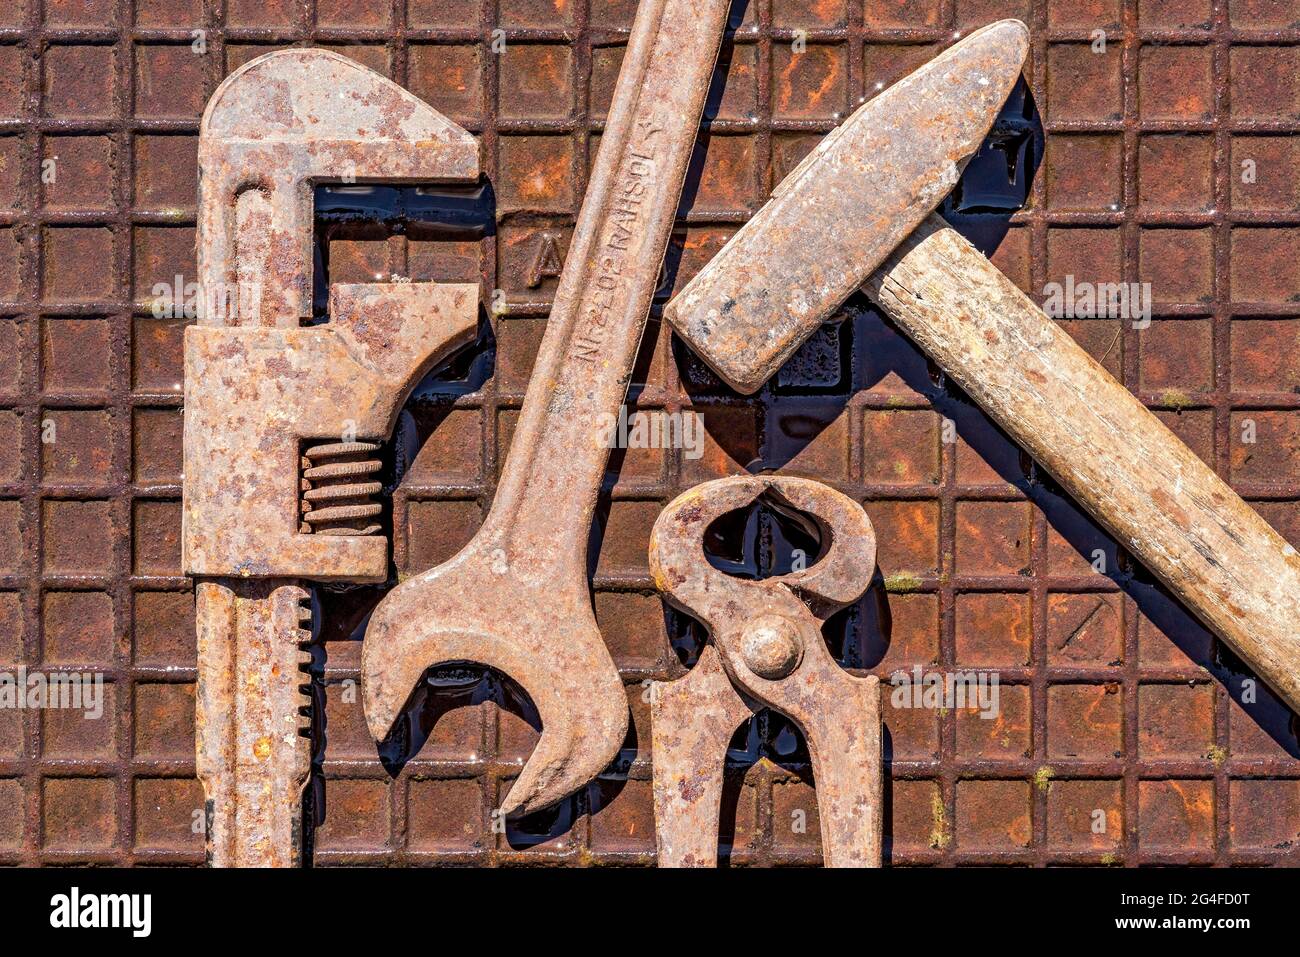 Vecchio utensile con inglese, chiave, pinza di fissaggio, martello su piastra in ferro arrugginito umido, Germania Foto Stock